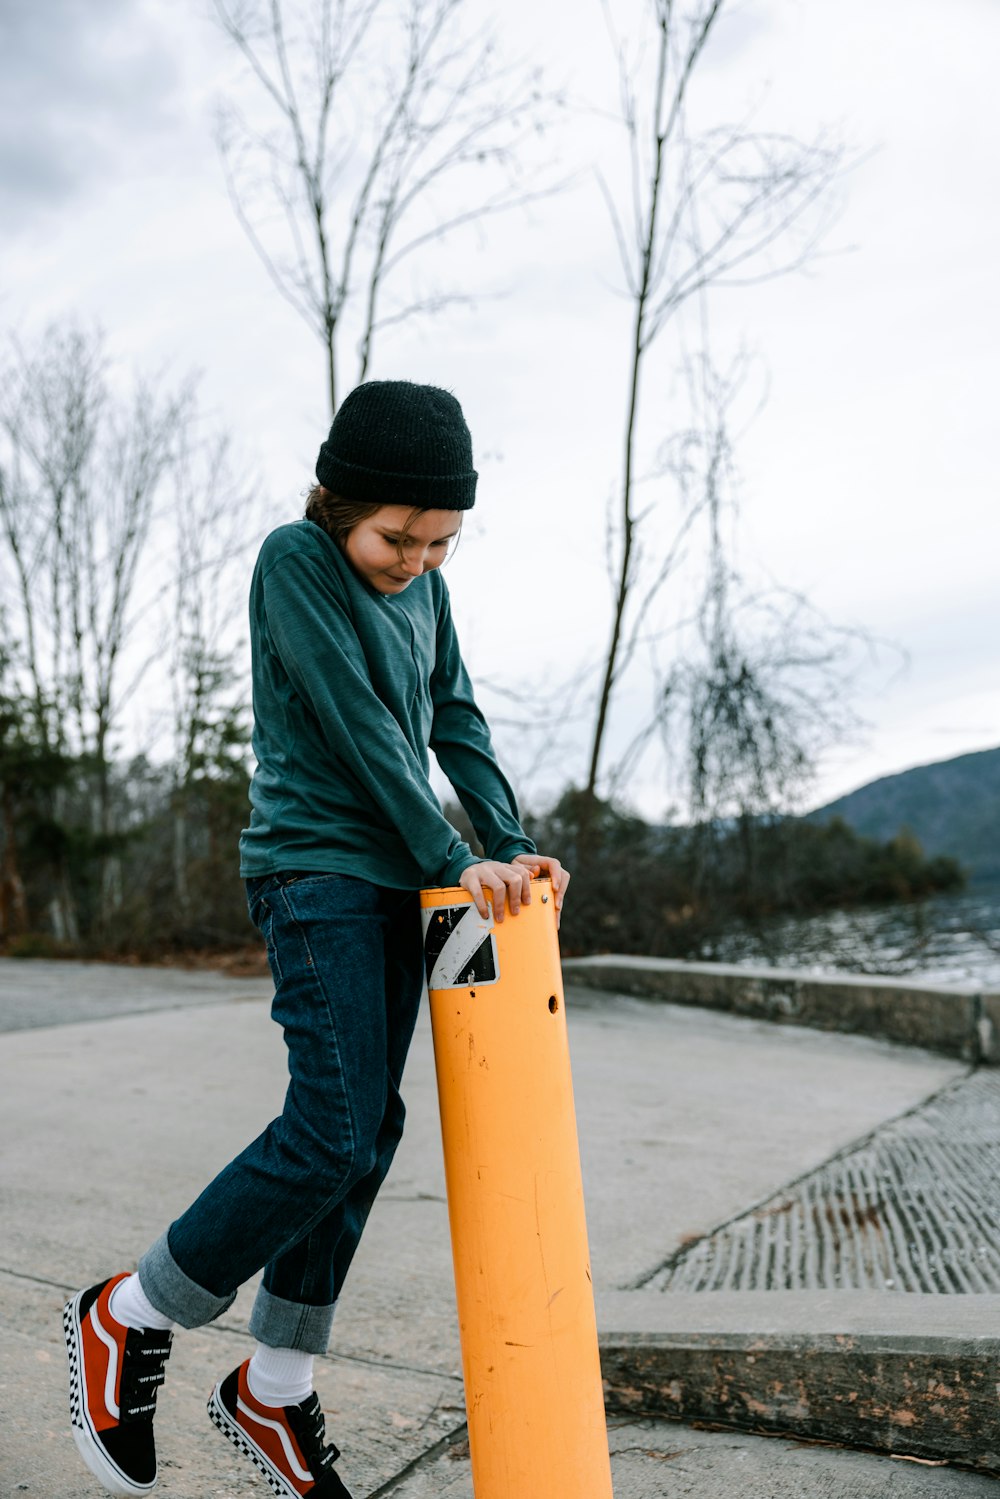 a young boy holding a skateboard on a sidewalk